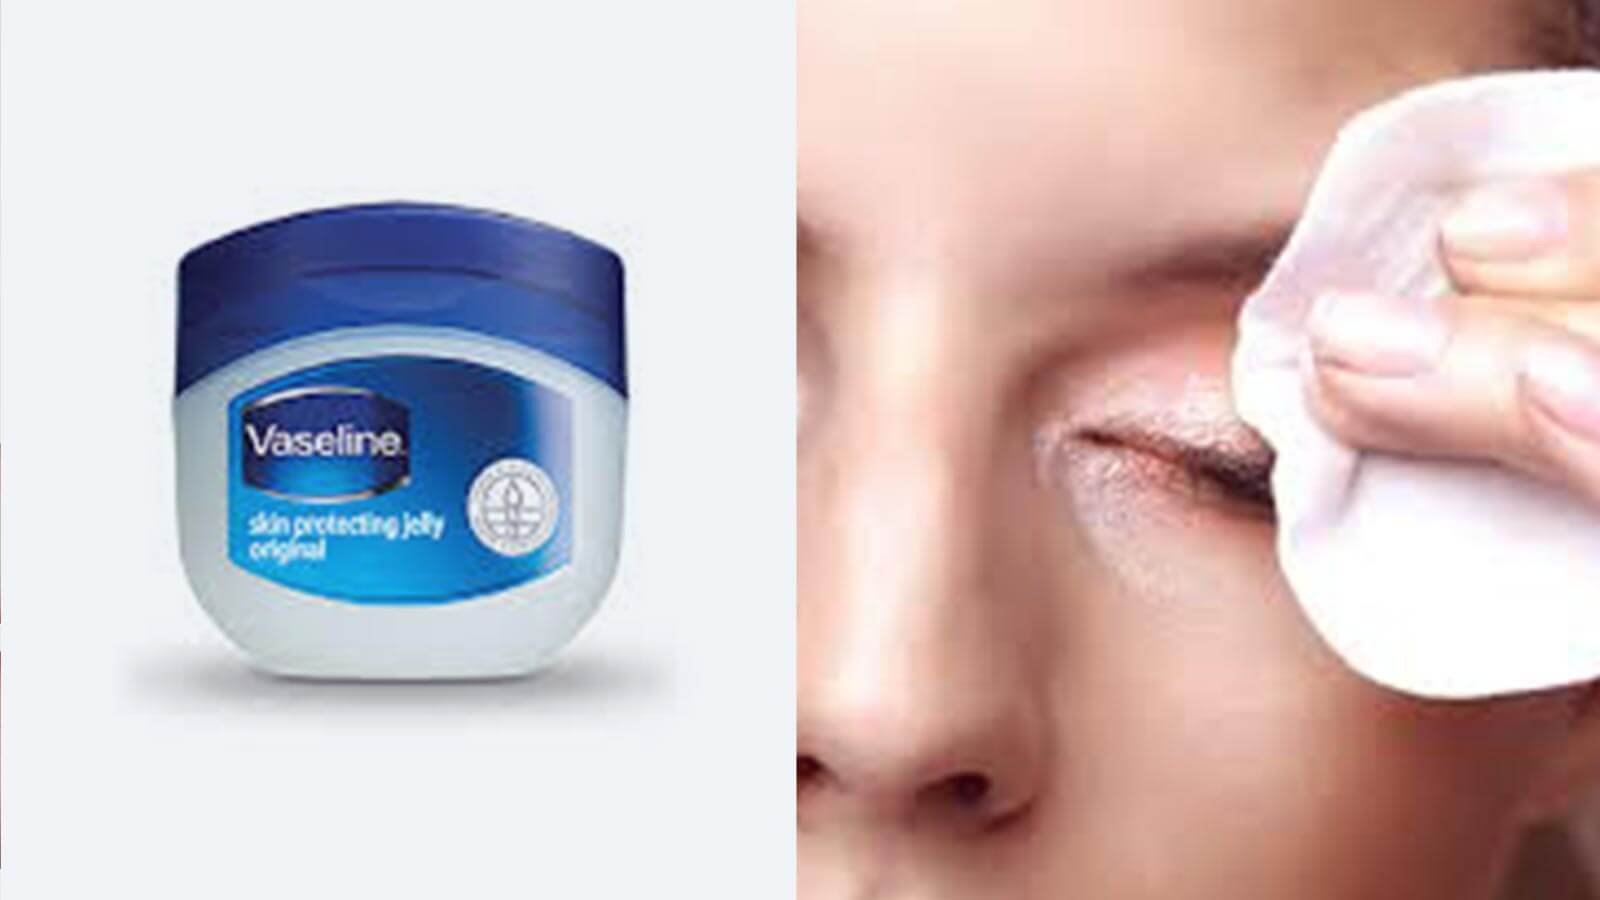 remove eye-makeup with Vaseline